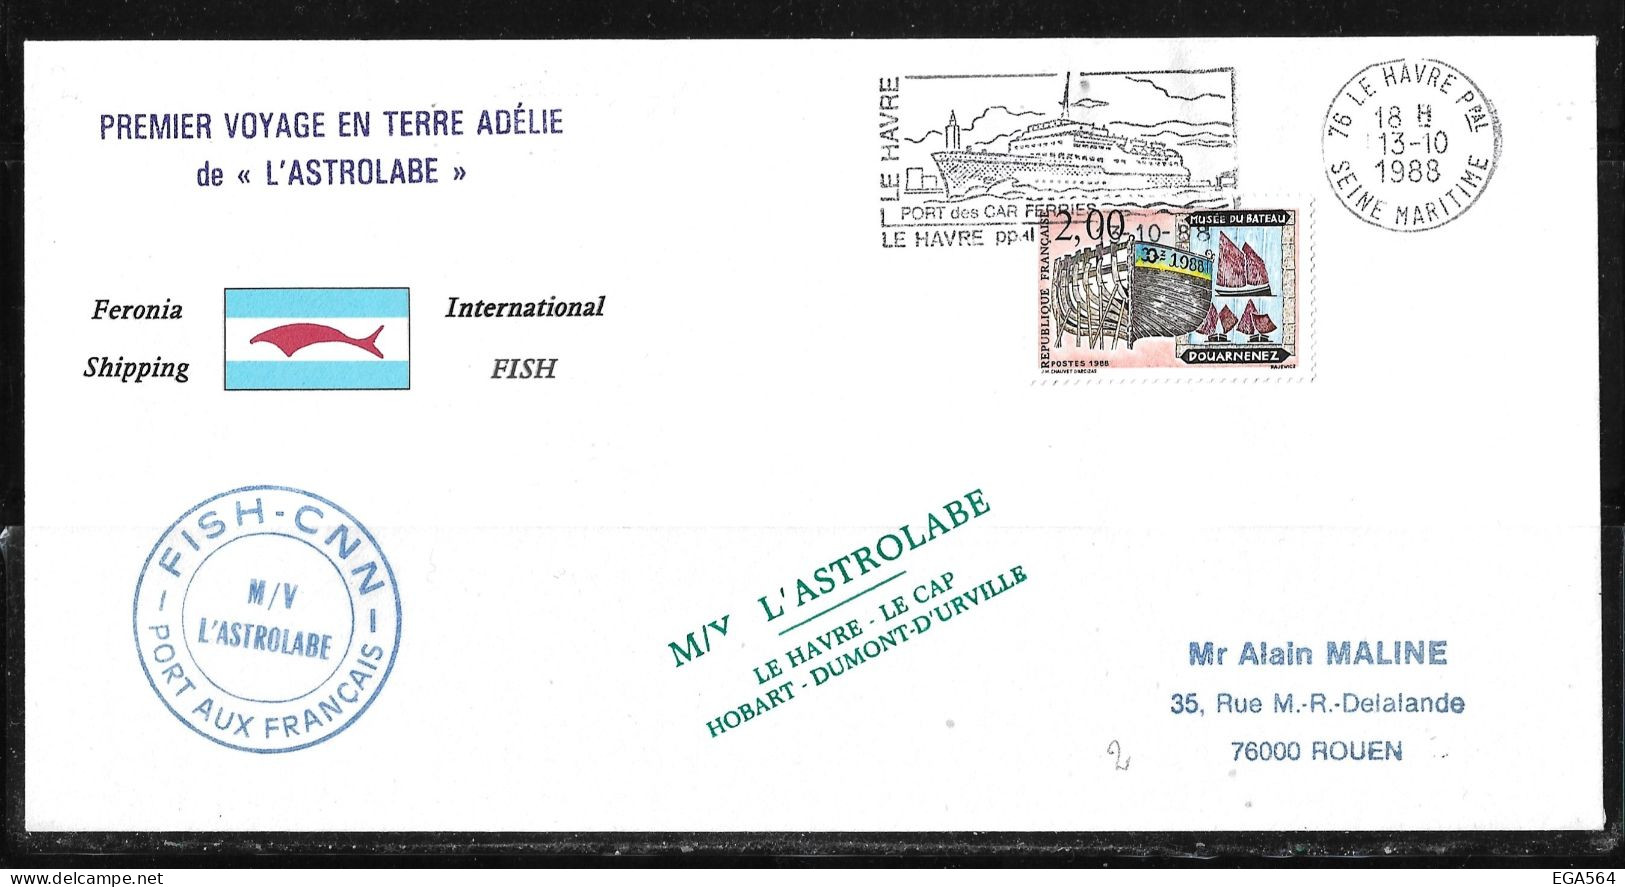 91 - TAAF Timbre France 13.10.1988 Le Havre. Départ De La 1ère Rotation De " L'ASTROLABE" - Briefe U. Dokumente